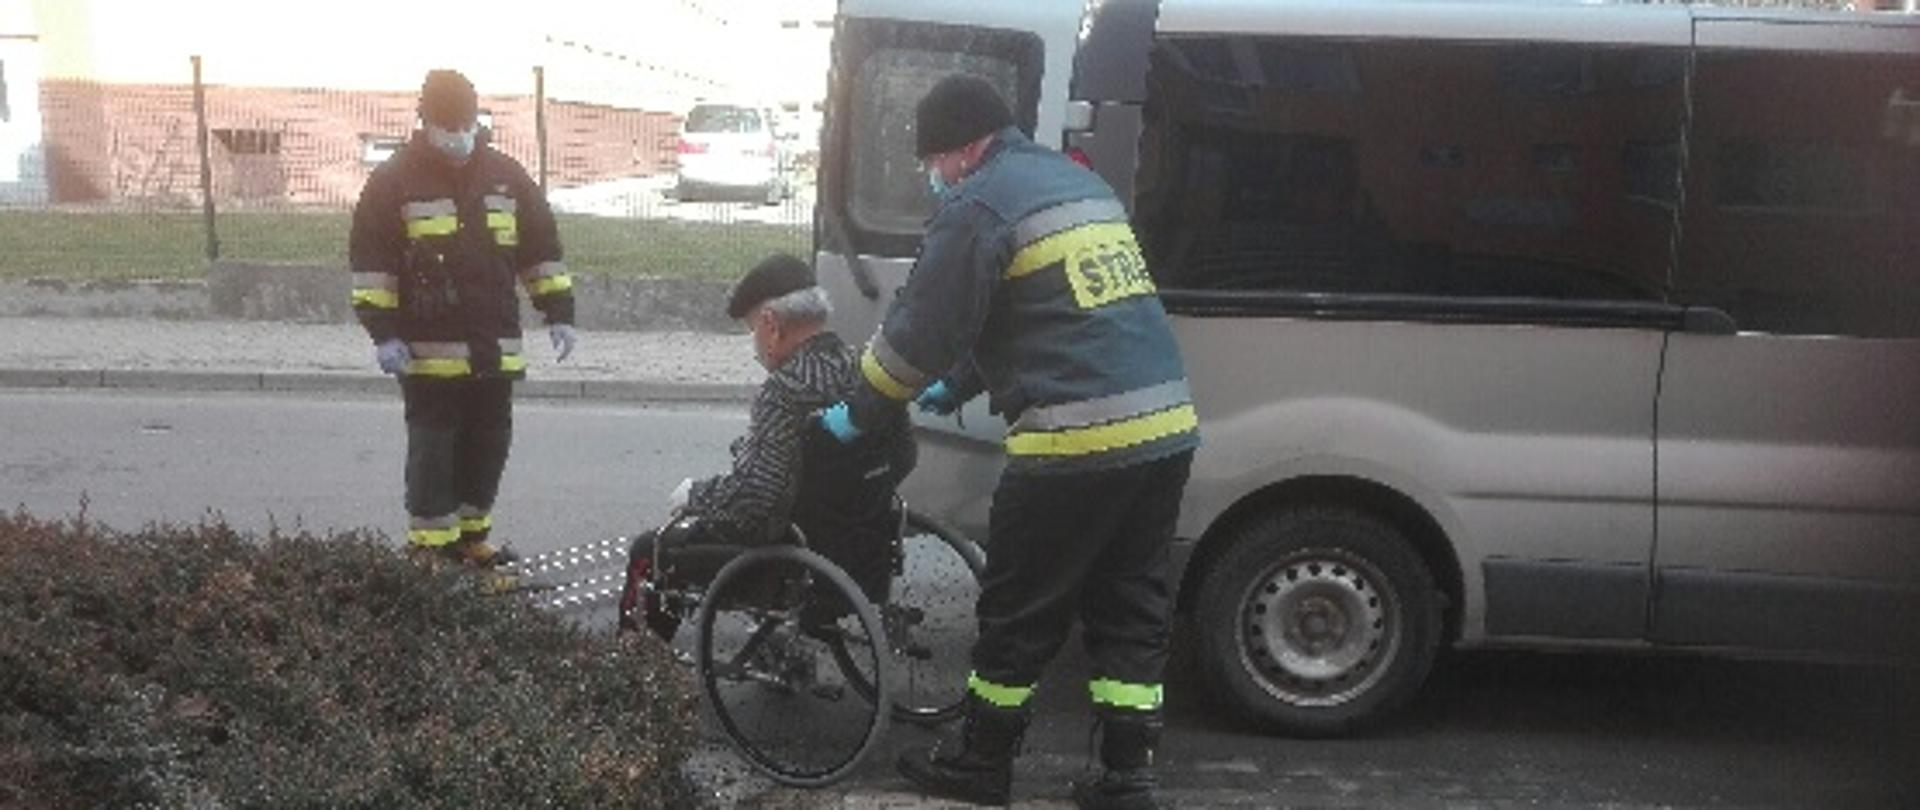 Obraz przedstawia strażaków pomagających osobie na wózku dostać się do samochodu, którym zostanie przetransportowany na szczepienie.